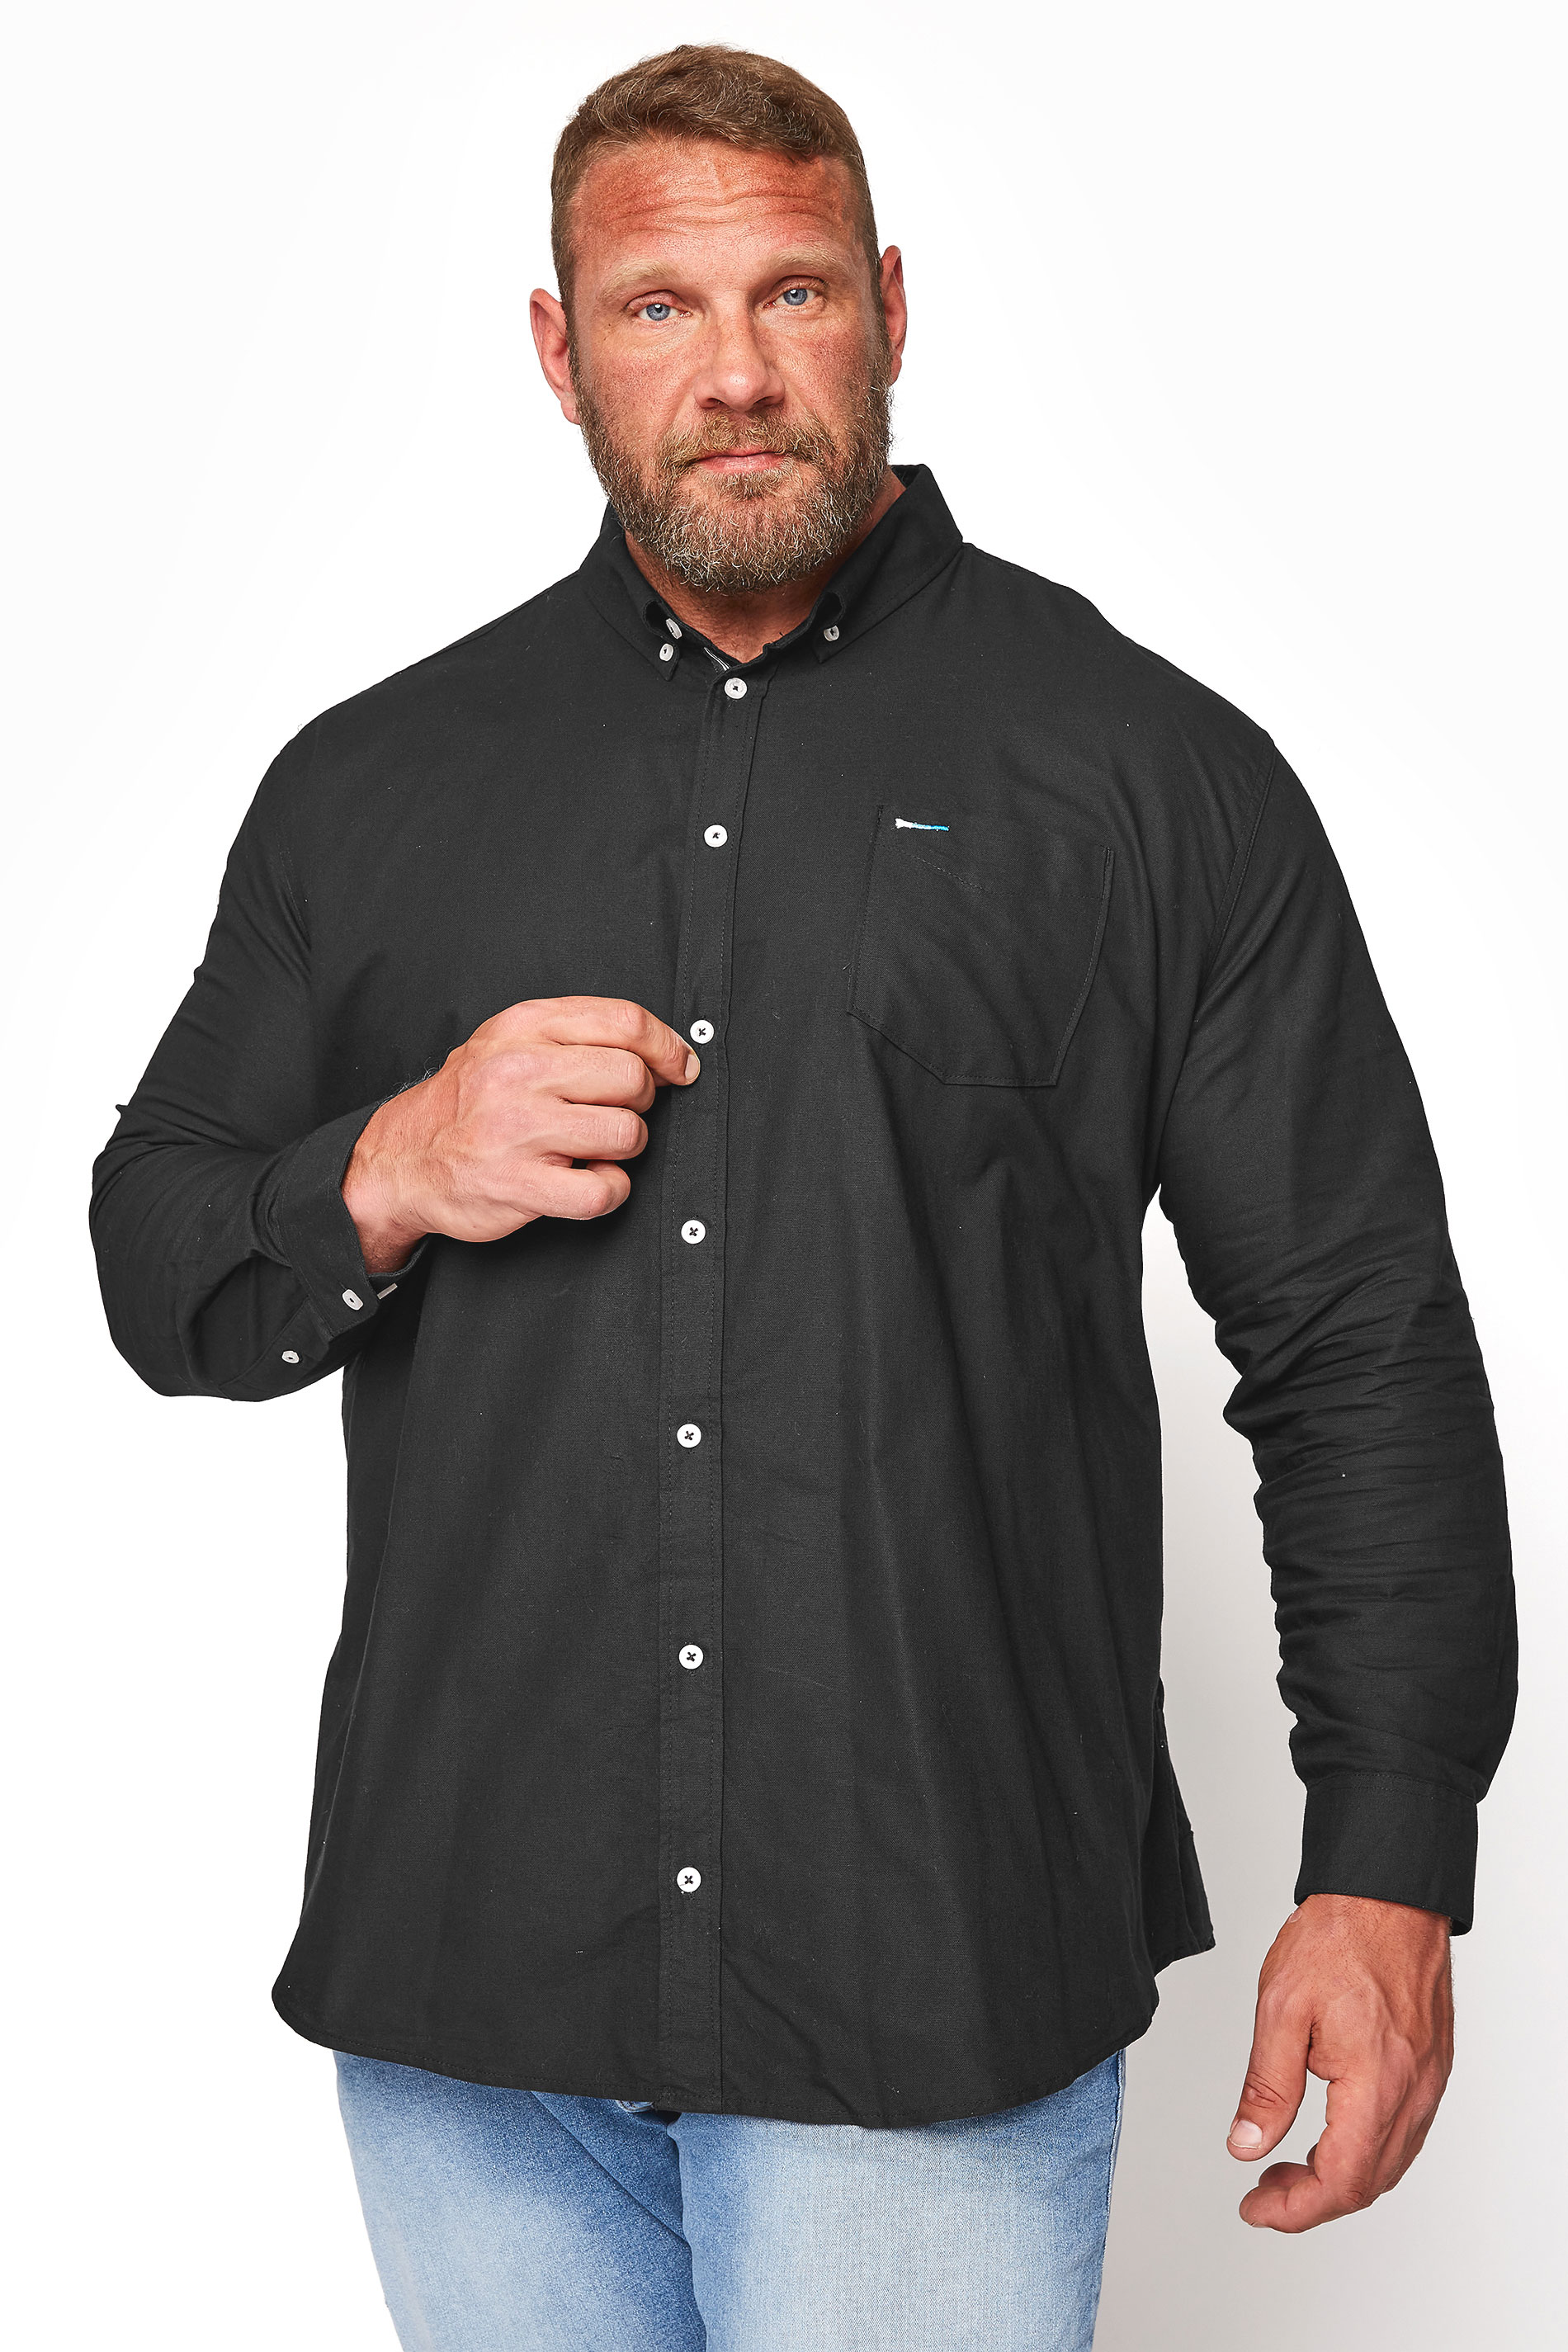 BadRhino Black Essential Long Sleeve Oxford Shirt | BadRhino 1